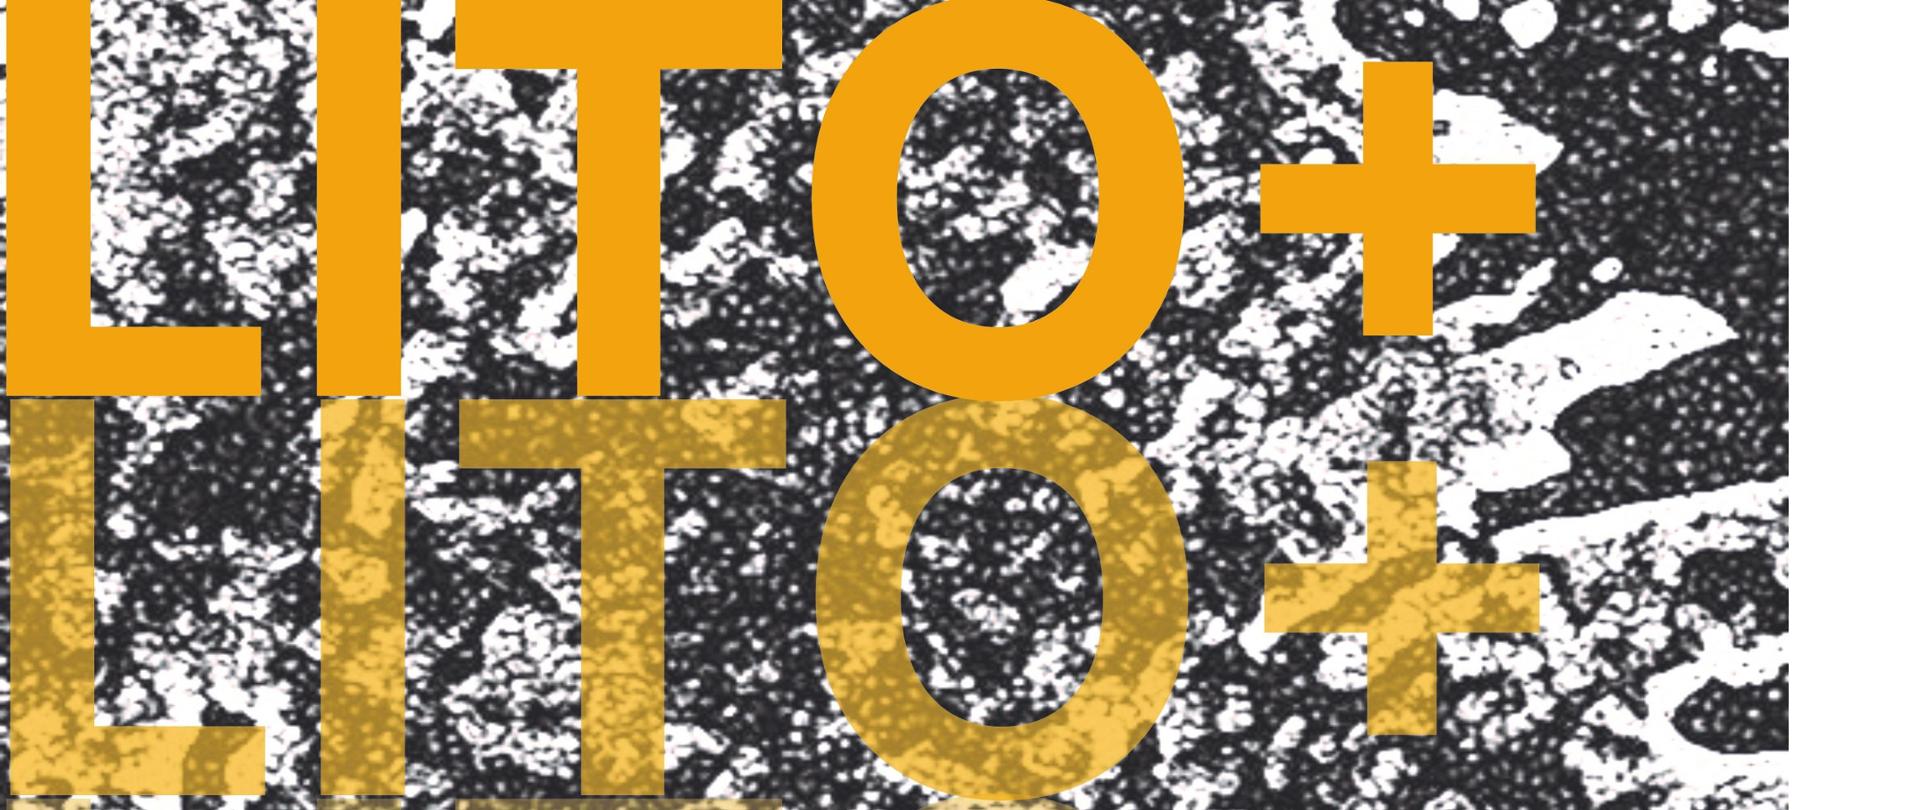 Grafika w kolorach czerni i bieli u góry 3 napisy w kolorze żółtym LITO+ Na dole po prawej w kolorze żółtym cyfra 14 po lewej w kolorze czarnym logo i LSP Tarnów i Uniwersytetu Rzeszowskiego na środku grafiki w kolorze czarnym opis wernisażu wraz z datą i miejscem po prawej imiona i nazwiska prowadzących